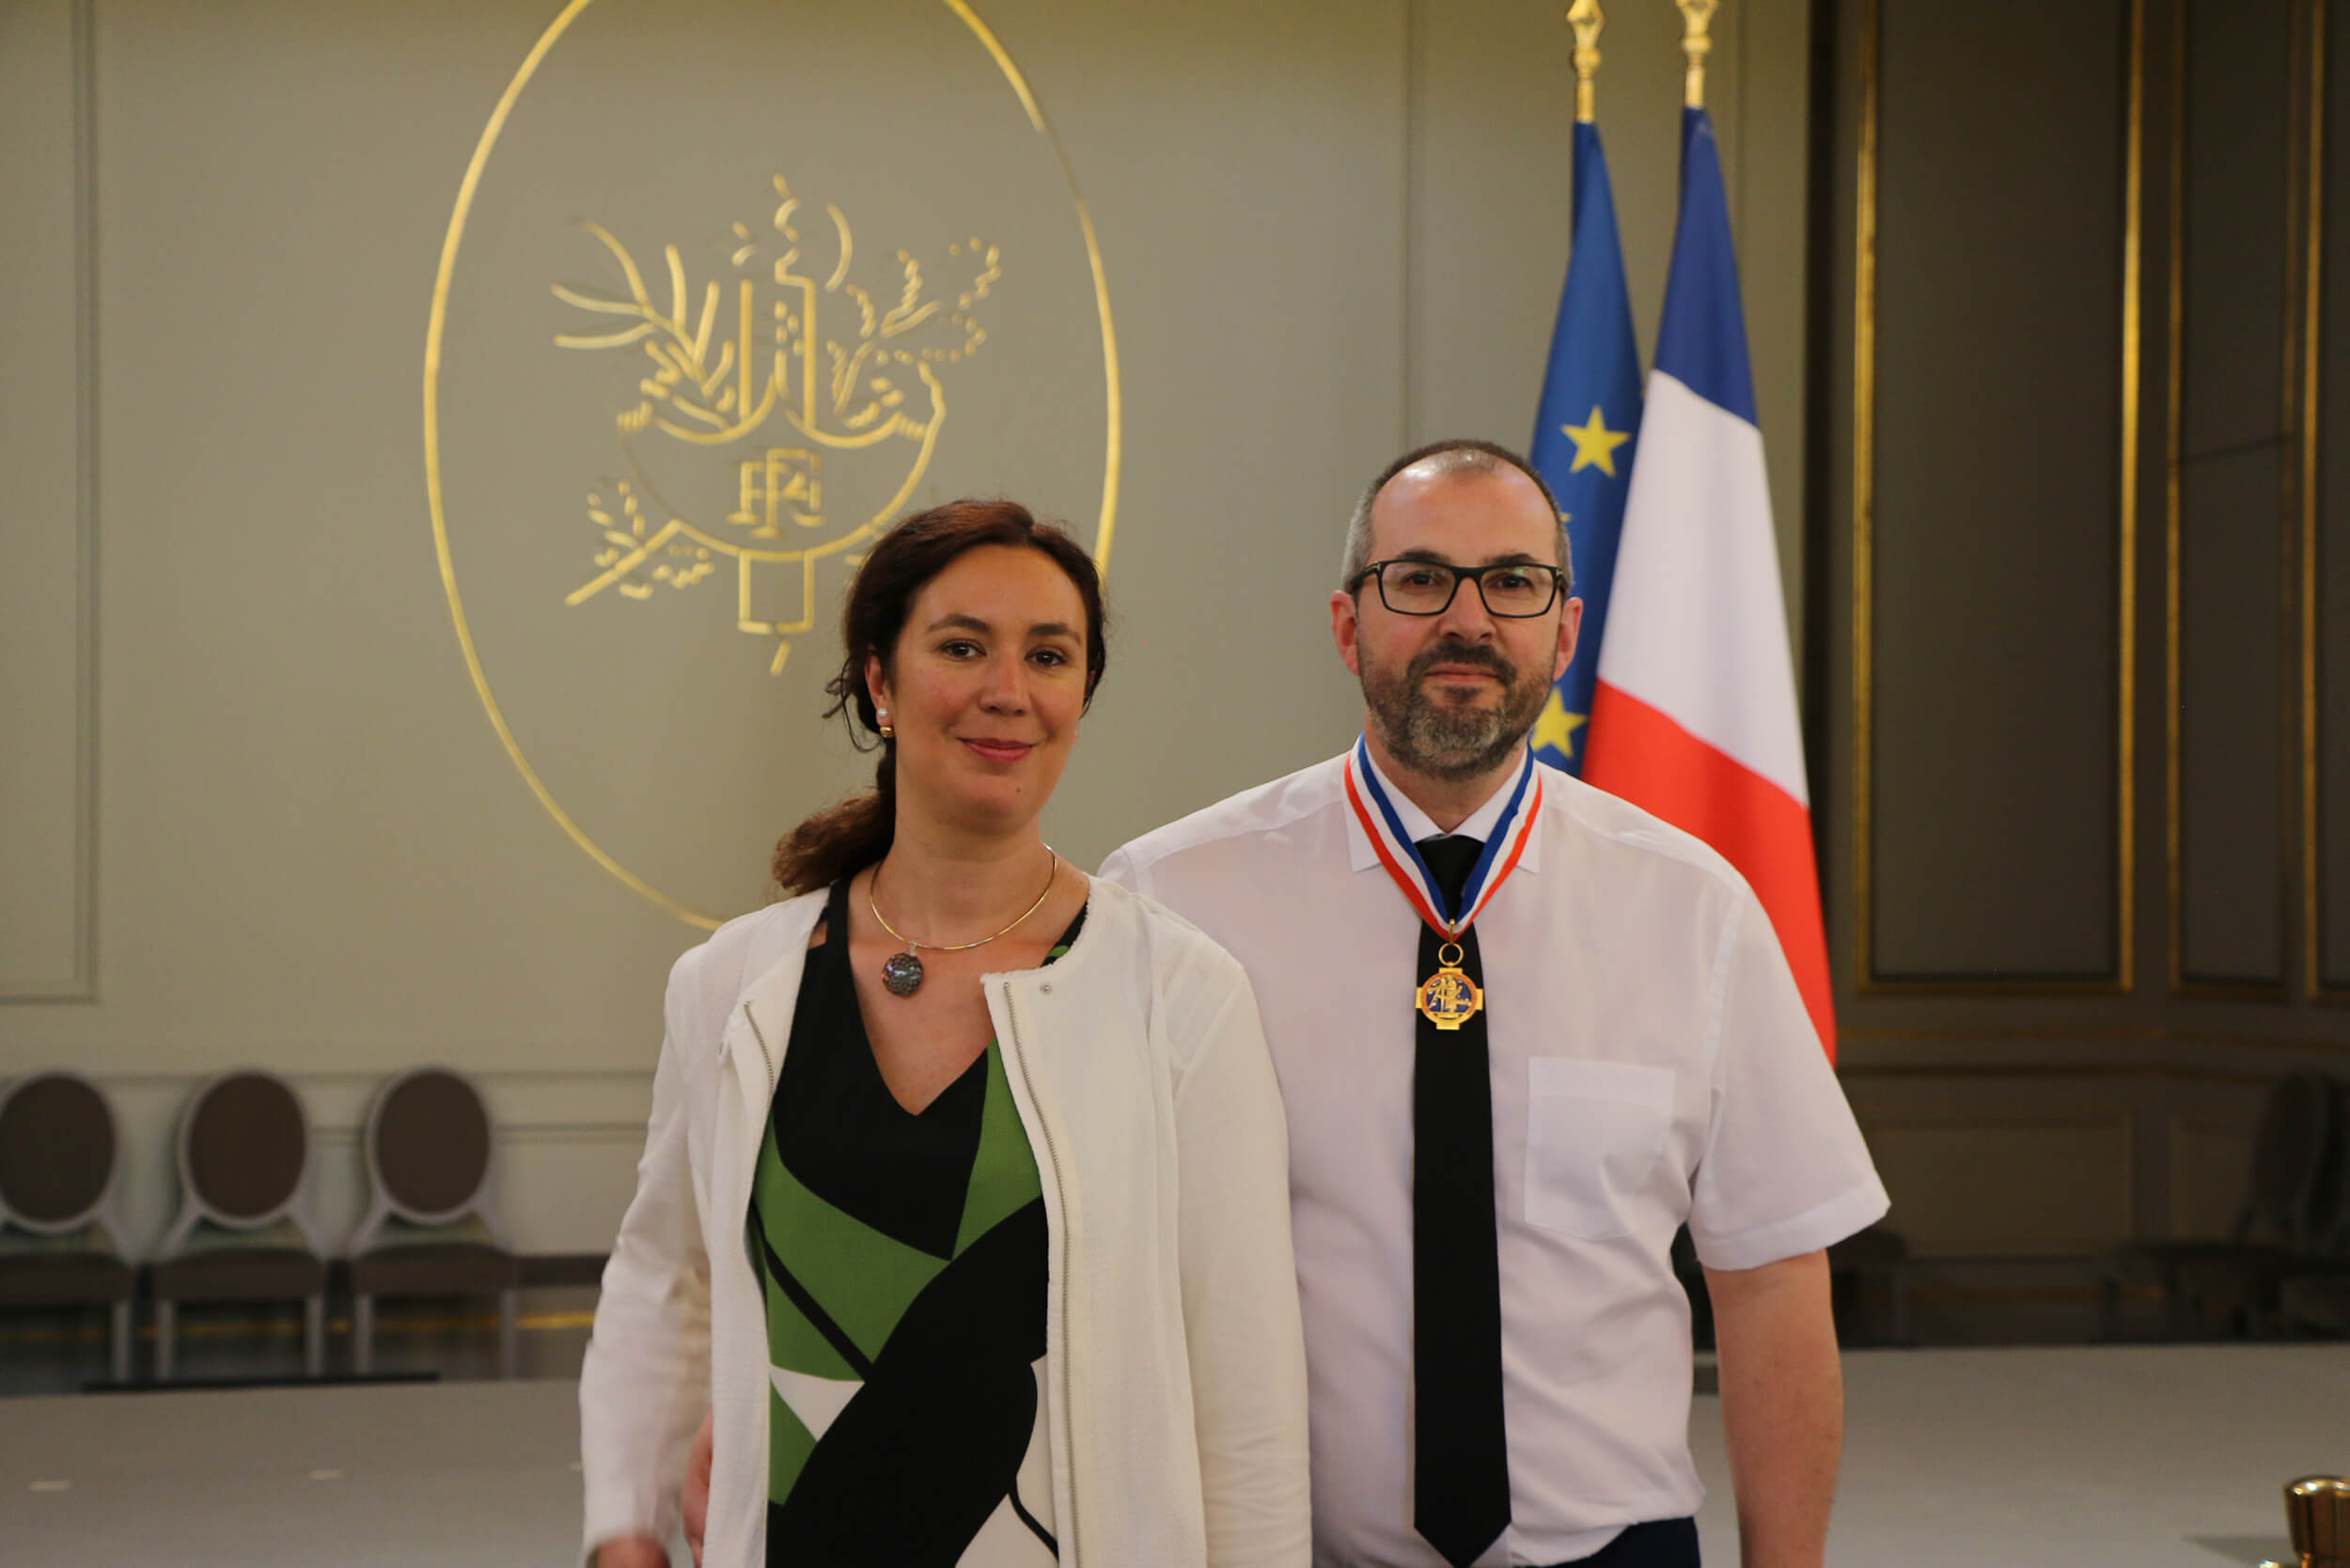 Frédéric & Stéphanie Demoisson